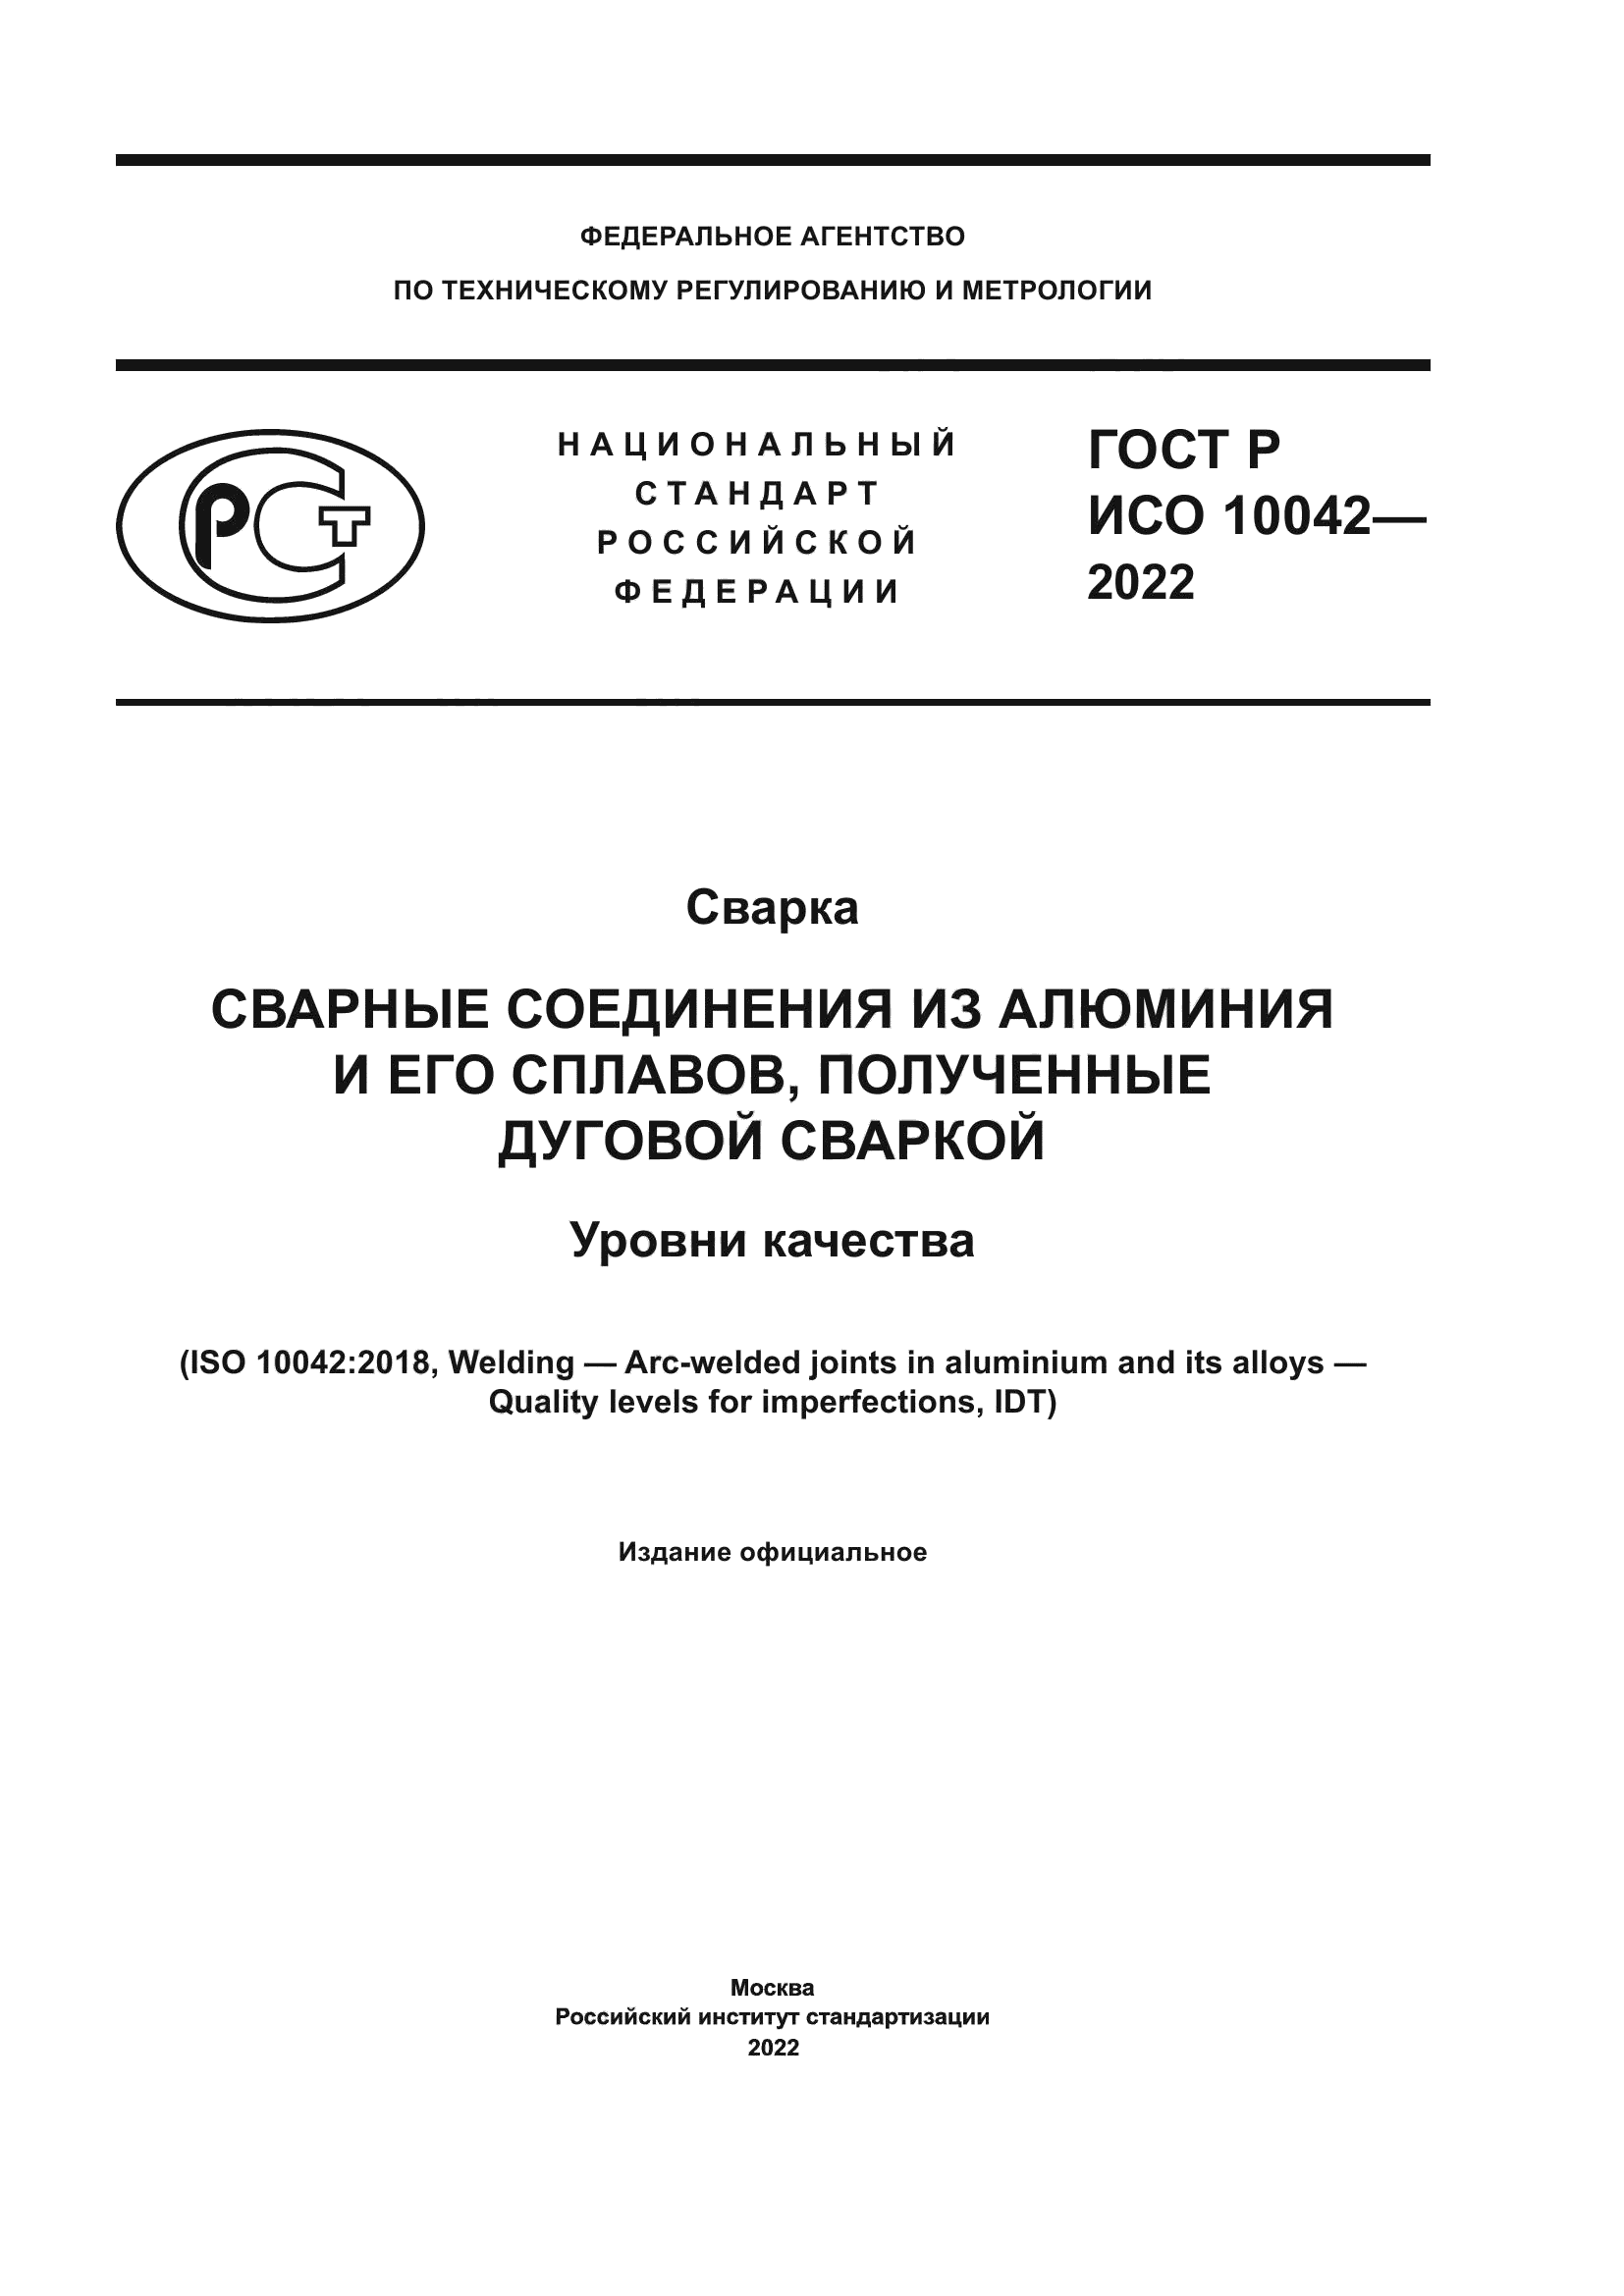 ГОСТ Р ИСО 10042-2022